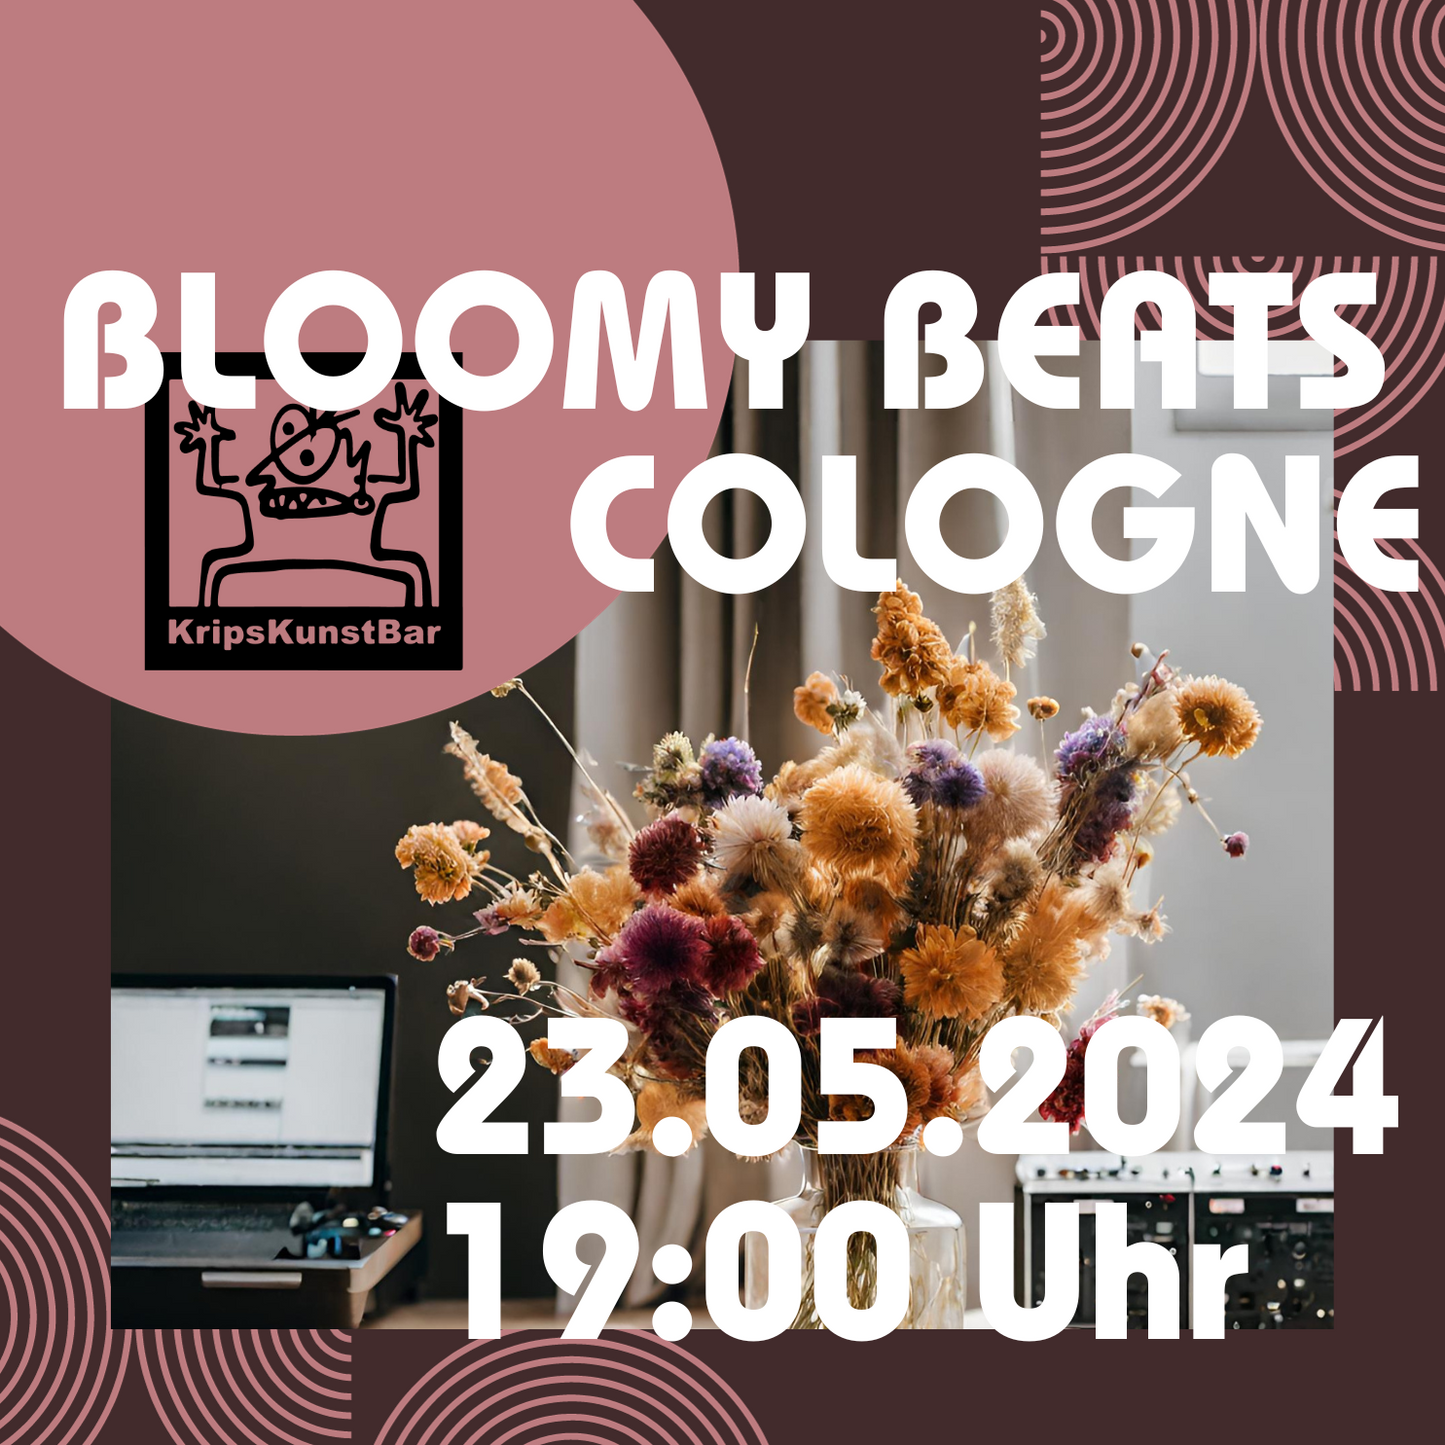 BLOOMY BEATS - Trockenblumenbouquet Workshop Kunstbar Köln 23.05.2024 19 Uhr